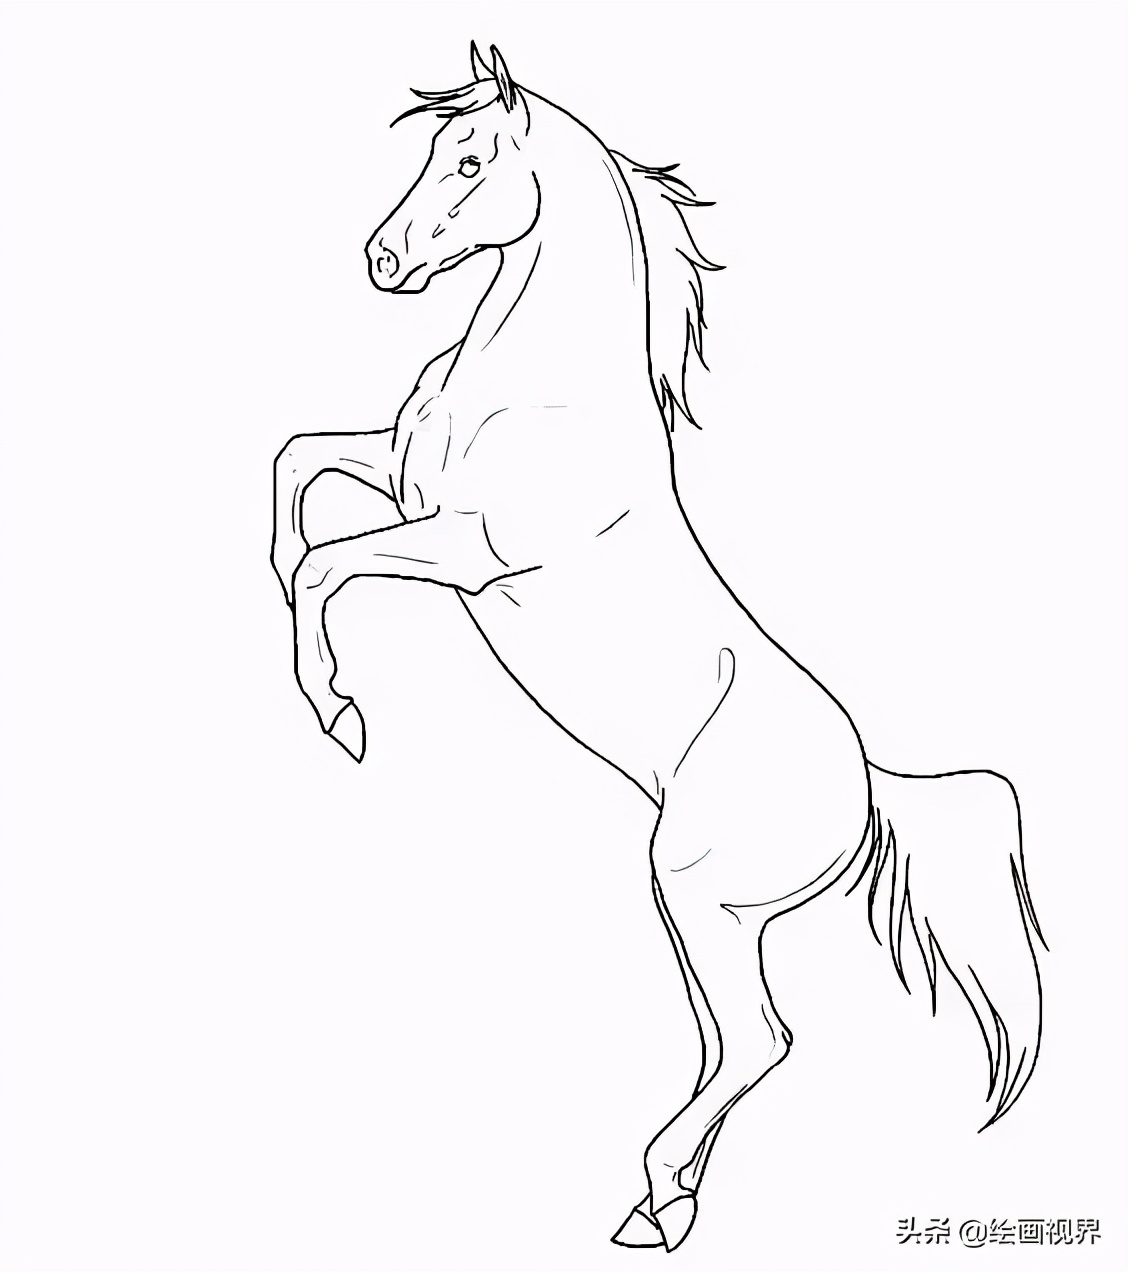 马很难画?从造型到线条,10种马的画法高清线稿教你画,快临摹